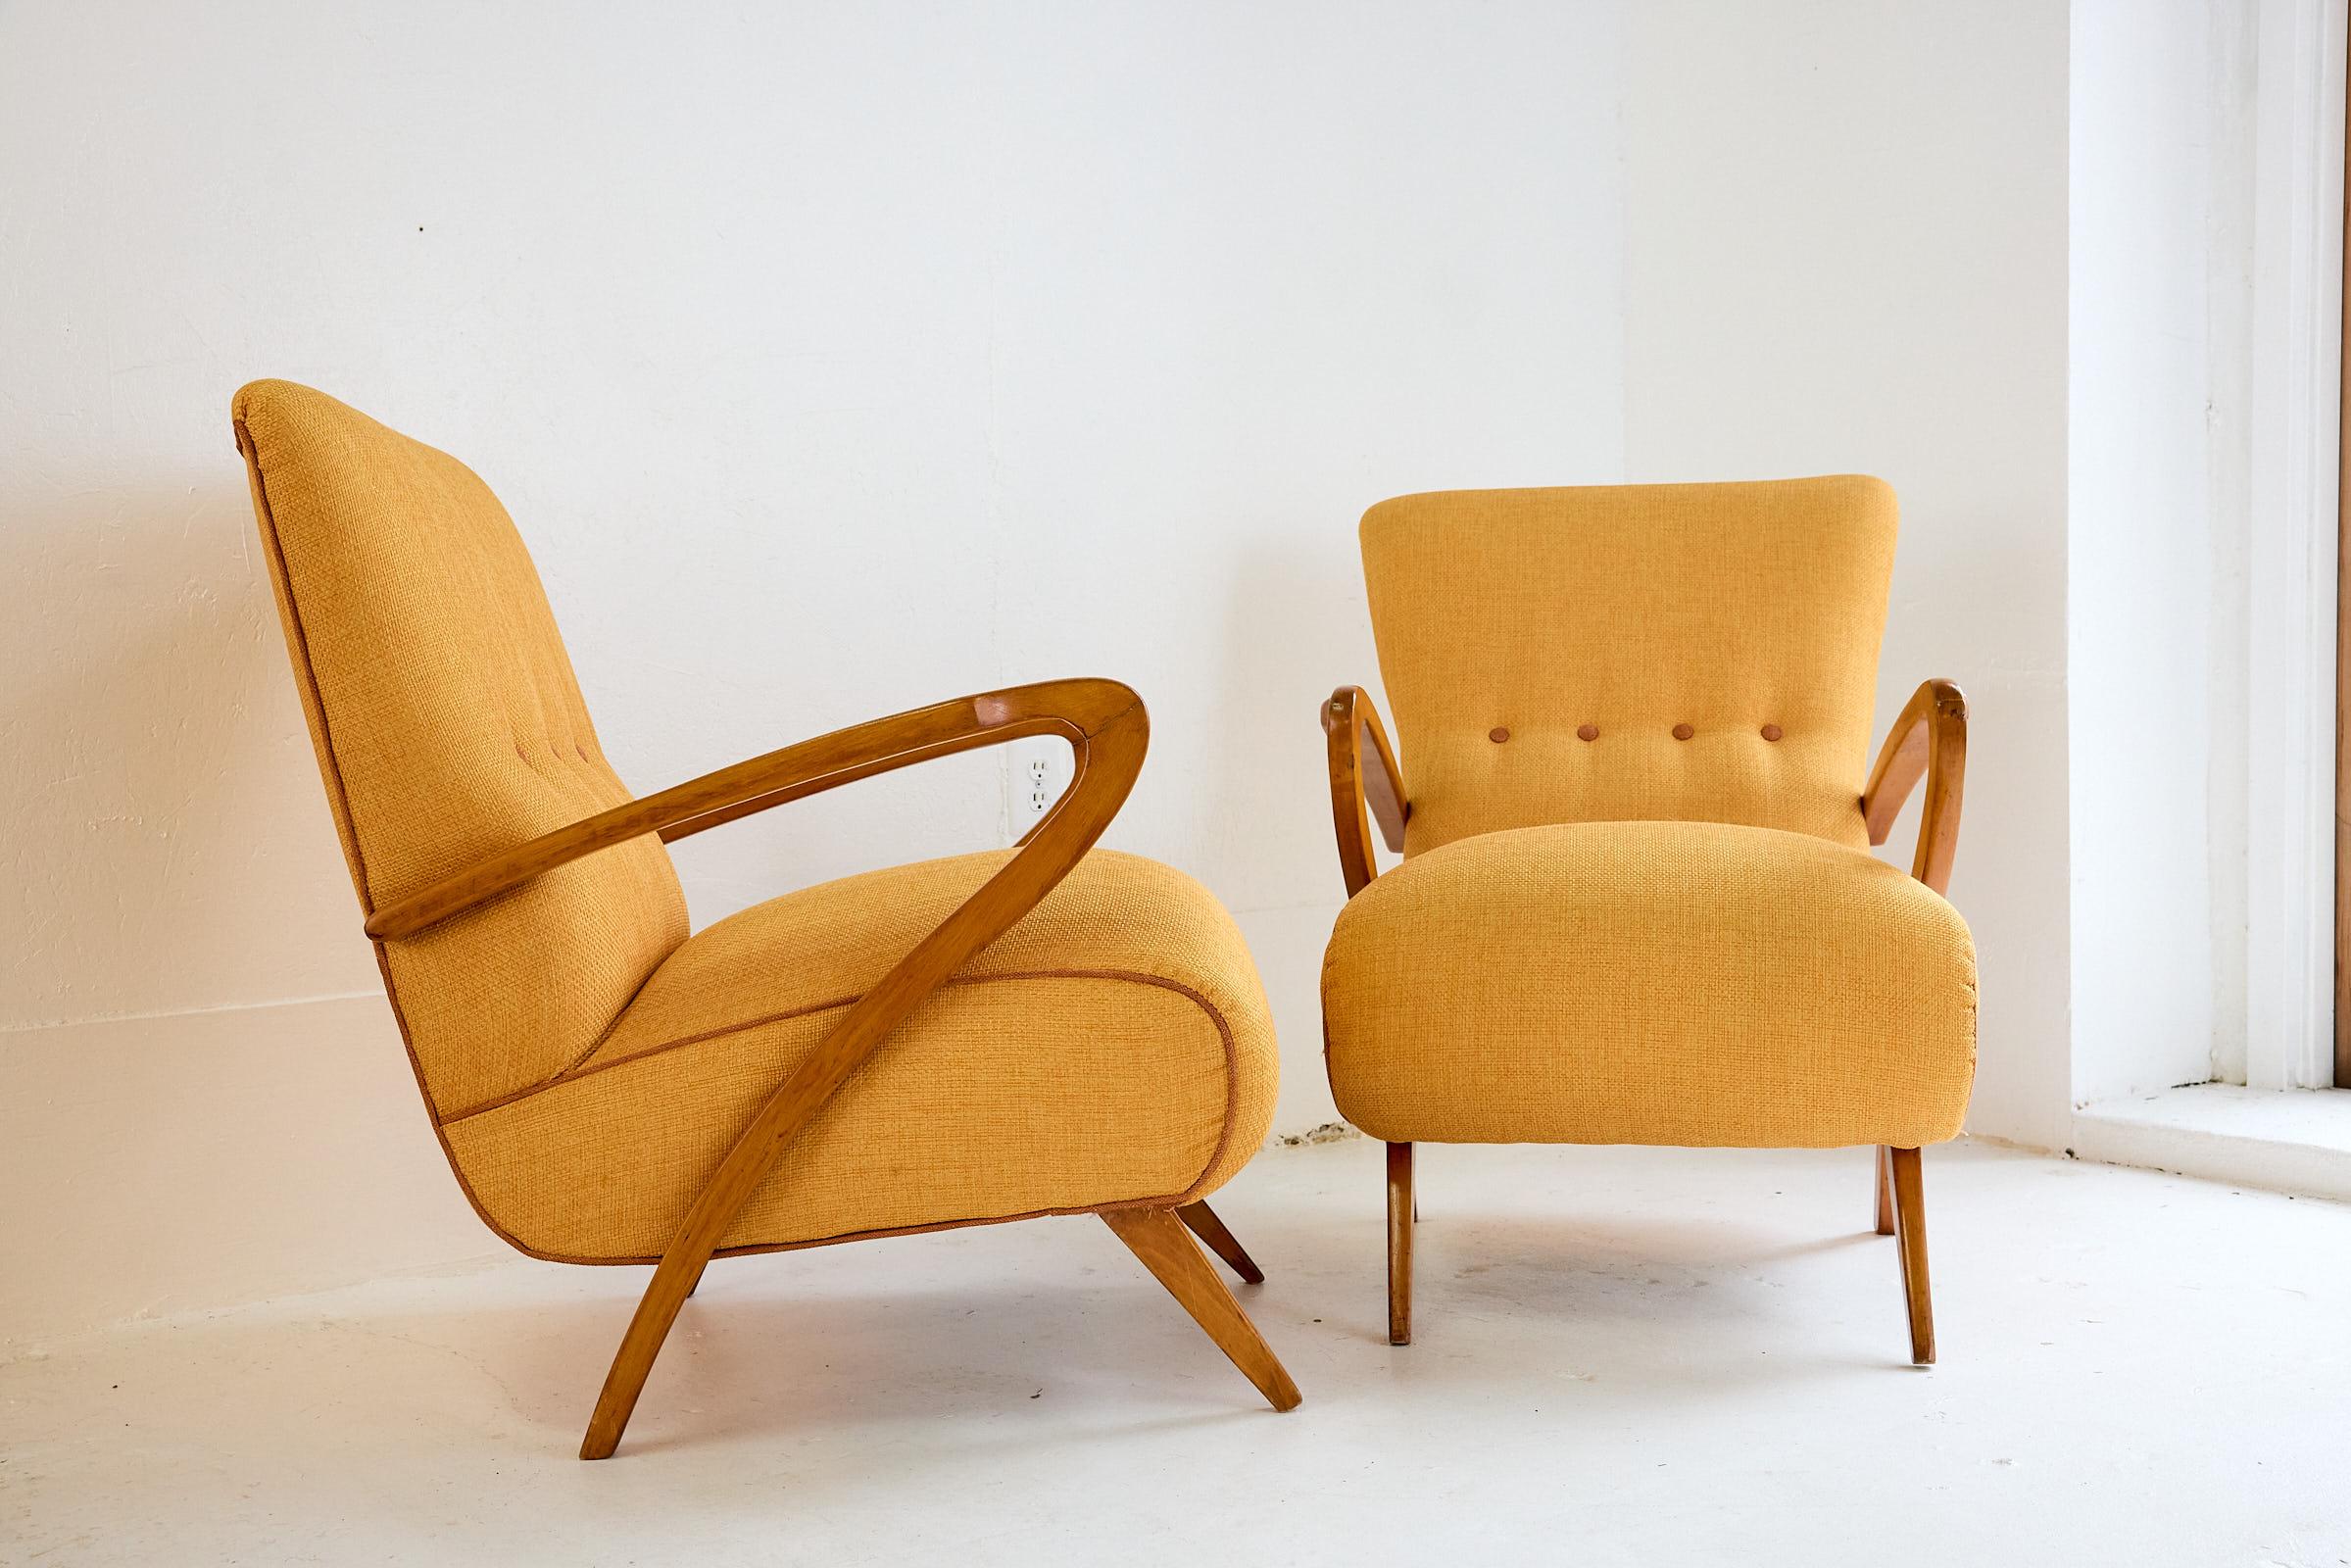 Ein Paar kultige italienische Mid-Century-Sessel mit hohem Sammlerwert, entworfen  von Guglielmo Ulrich in den 1950er Jahren. Die Loungesessel sind komplett restauriert, neu gepolstert und mit Leinenstoff bezogen, die Armlehnen und Füße sind aus